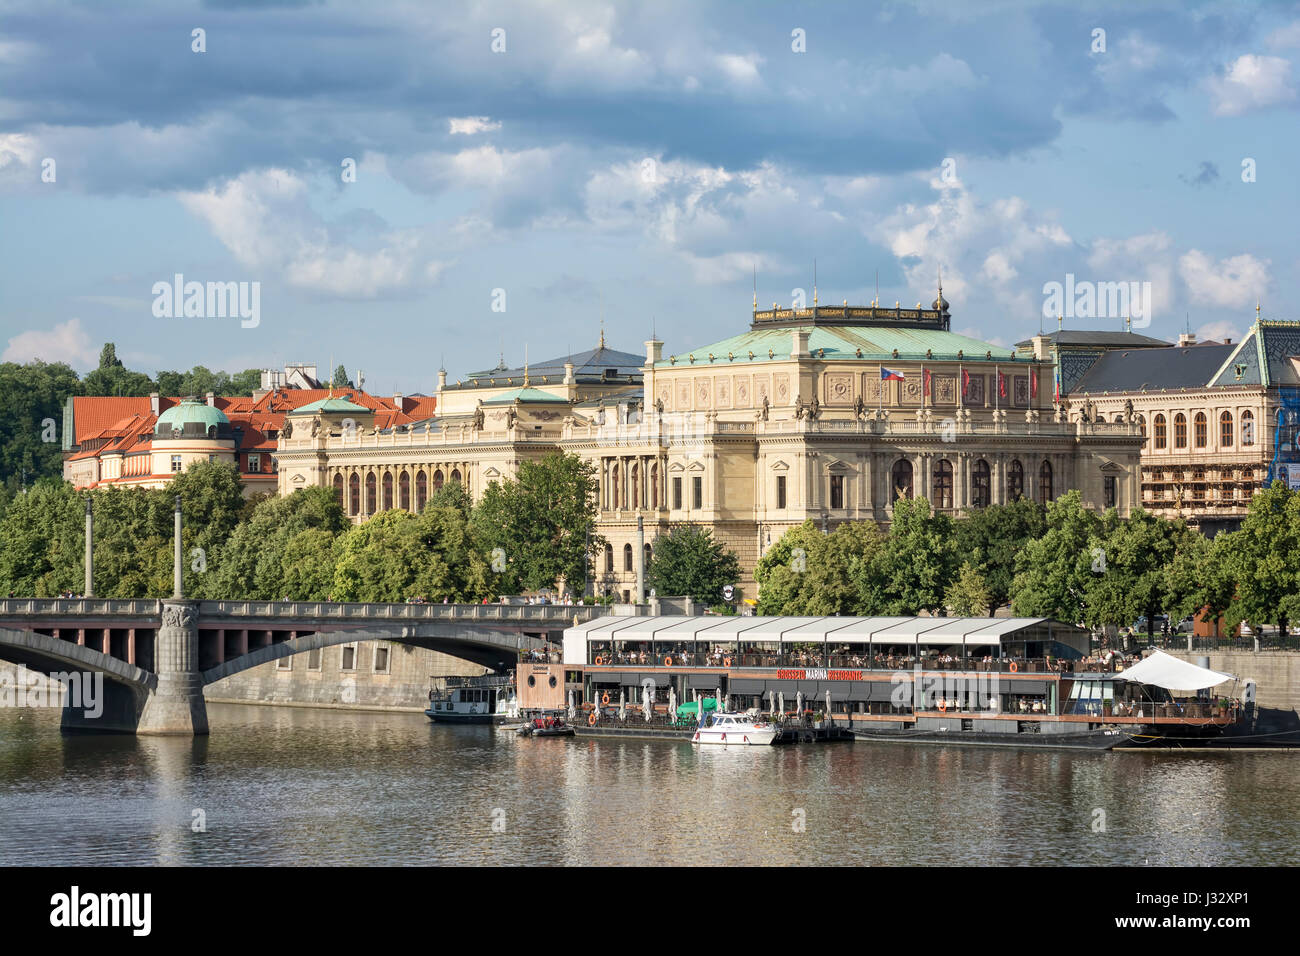 PRAGUE, CZECH REPUBLIC, JULY 5, 2016: View of Vltava River and Galerie Rudolfinum, a famous building in Prague housing Czech Philharmonic Orchestra Stock Photo